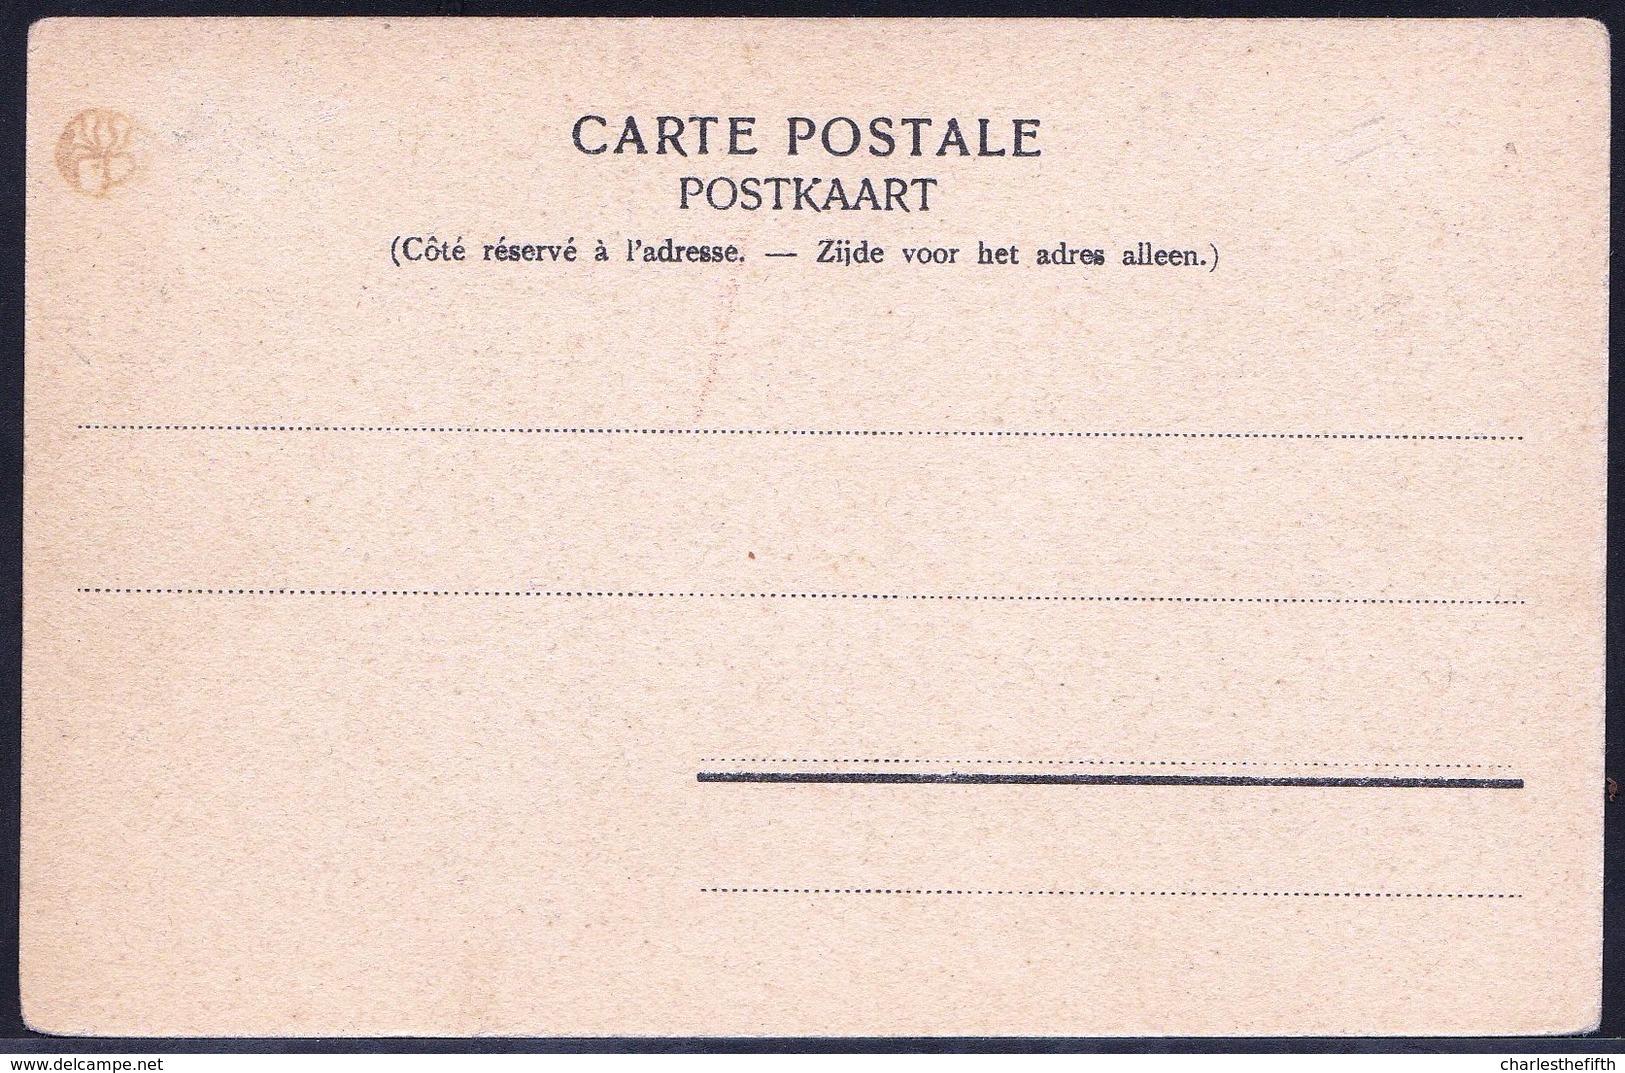 ST GENESIUS RODE - RHODE ST GENESE - Kasteel Septfontaines - Château Des Septfontaines - 1900 ! Précurseur Rare ! - Rhode-St-Genèse - St-Genesius-Rode